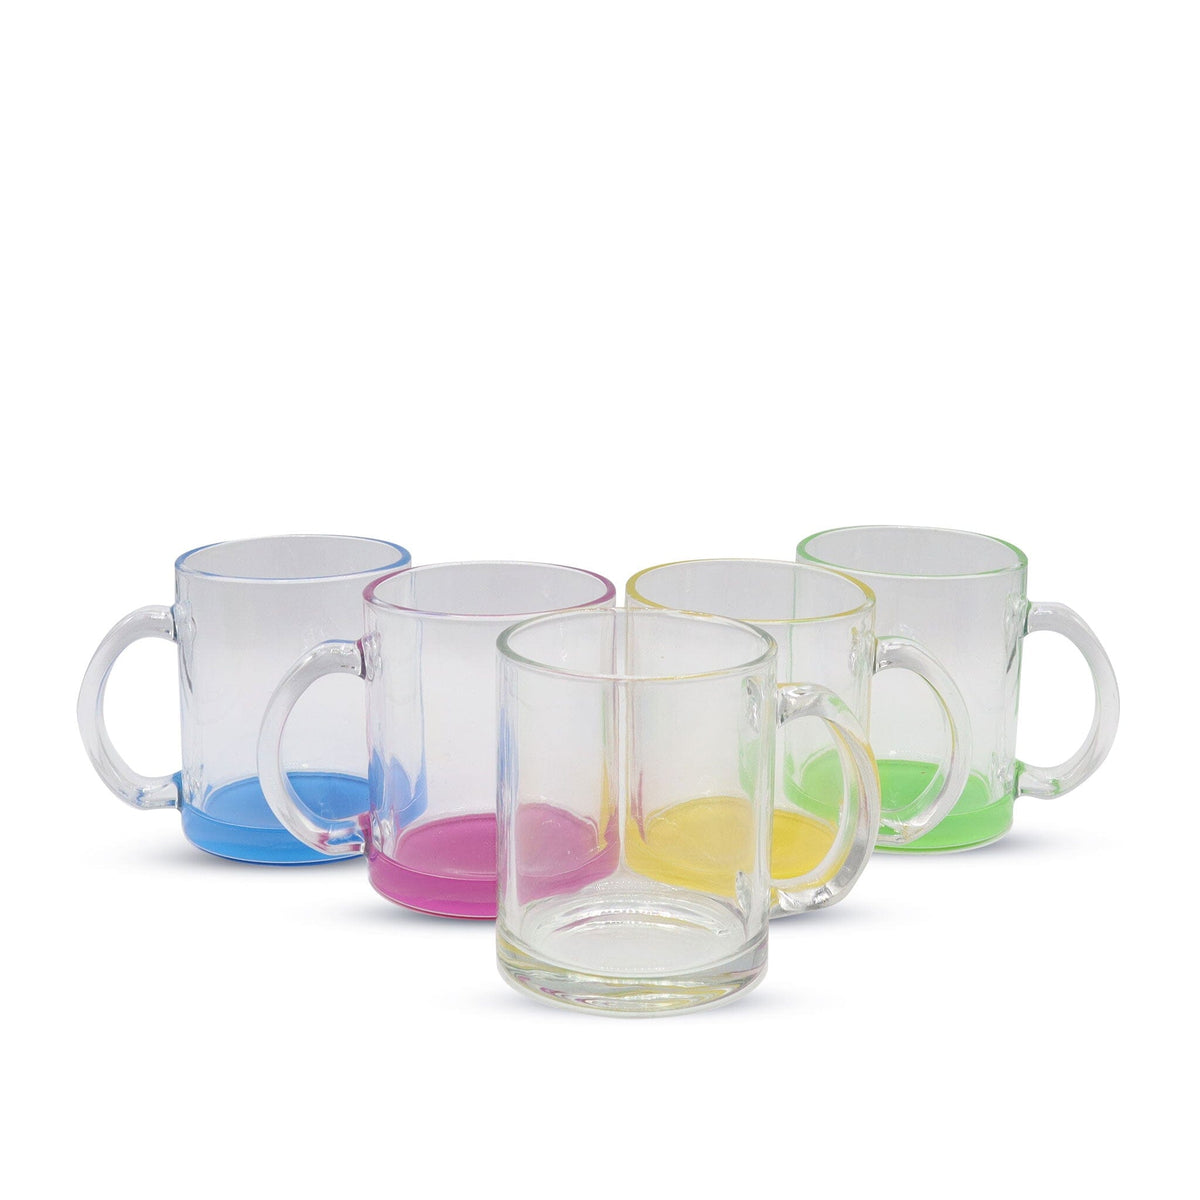 http://www.kupresso.com/cdn/shop/products/11oz-sublimation-glass-camper-mug-clear-kupresso-796031_1200x1200.jpg?v=1684886418